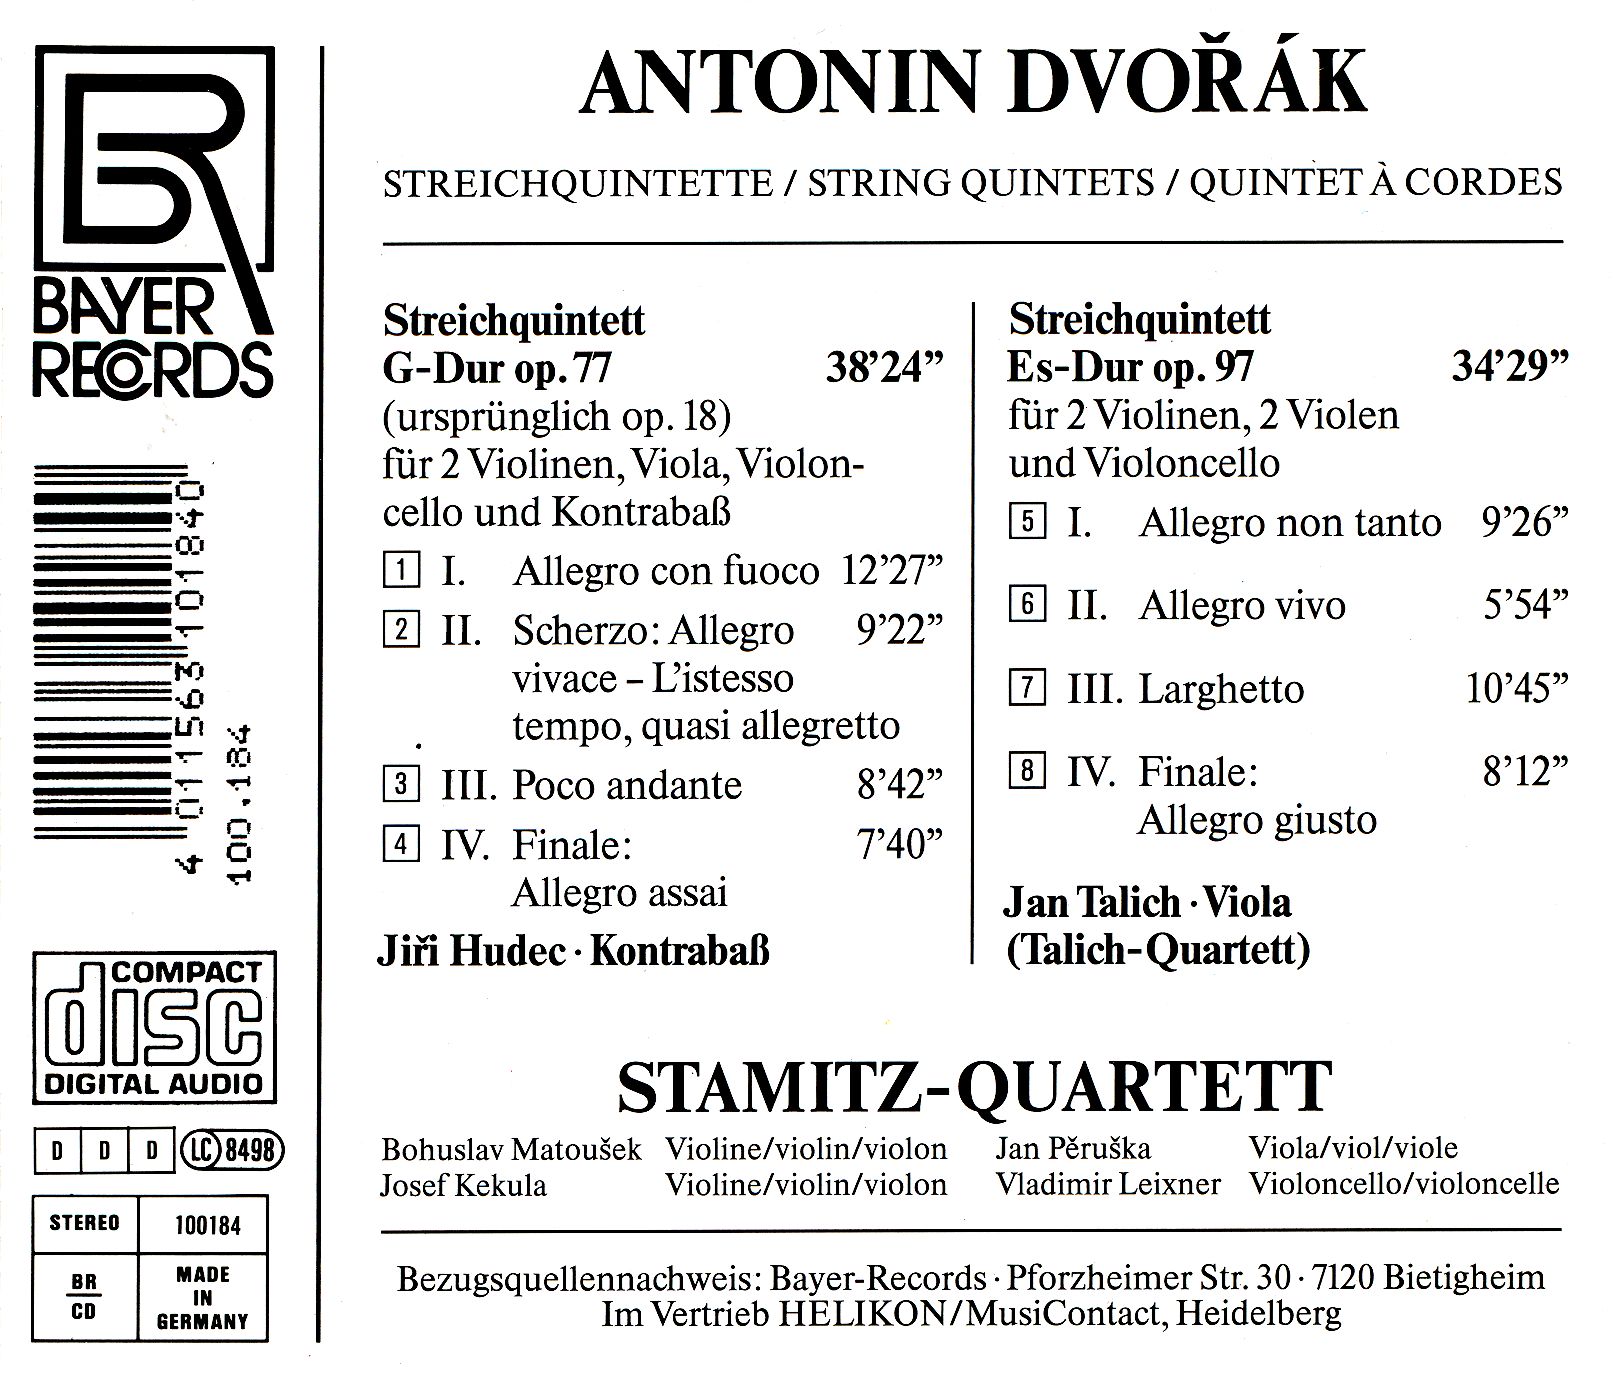 Antonin Dvorak - Streichquintette